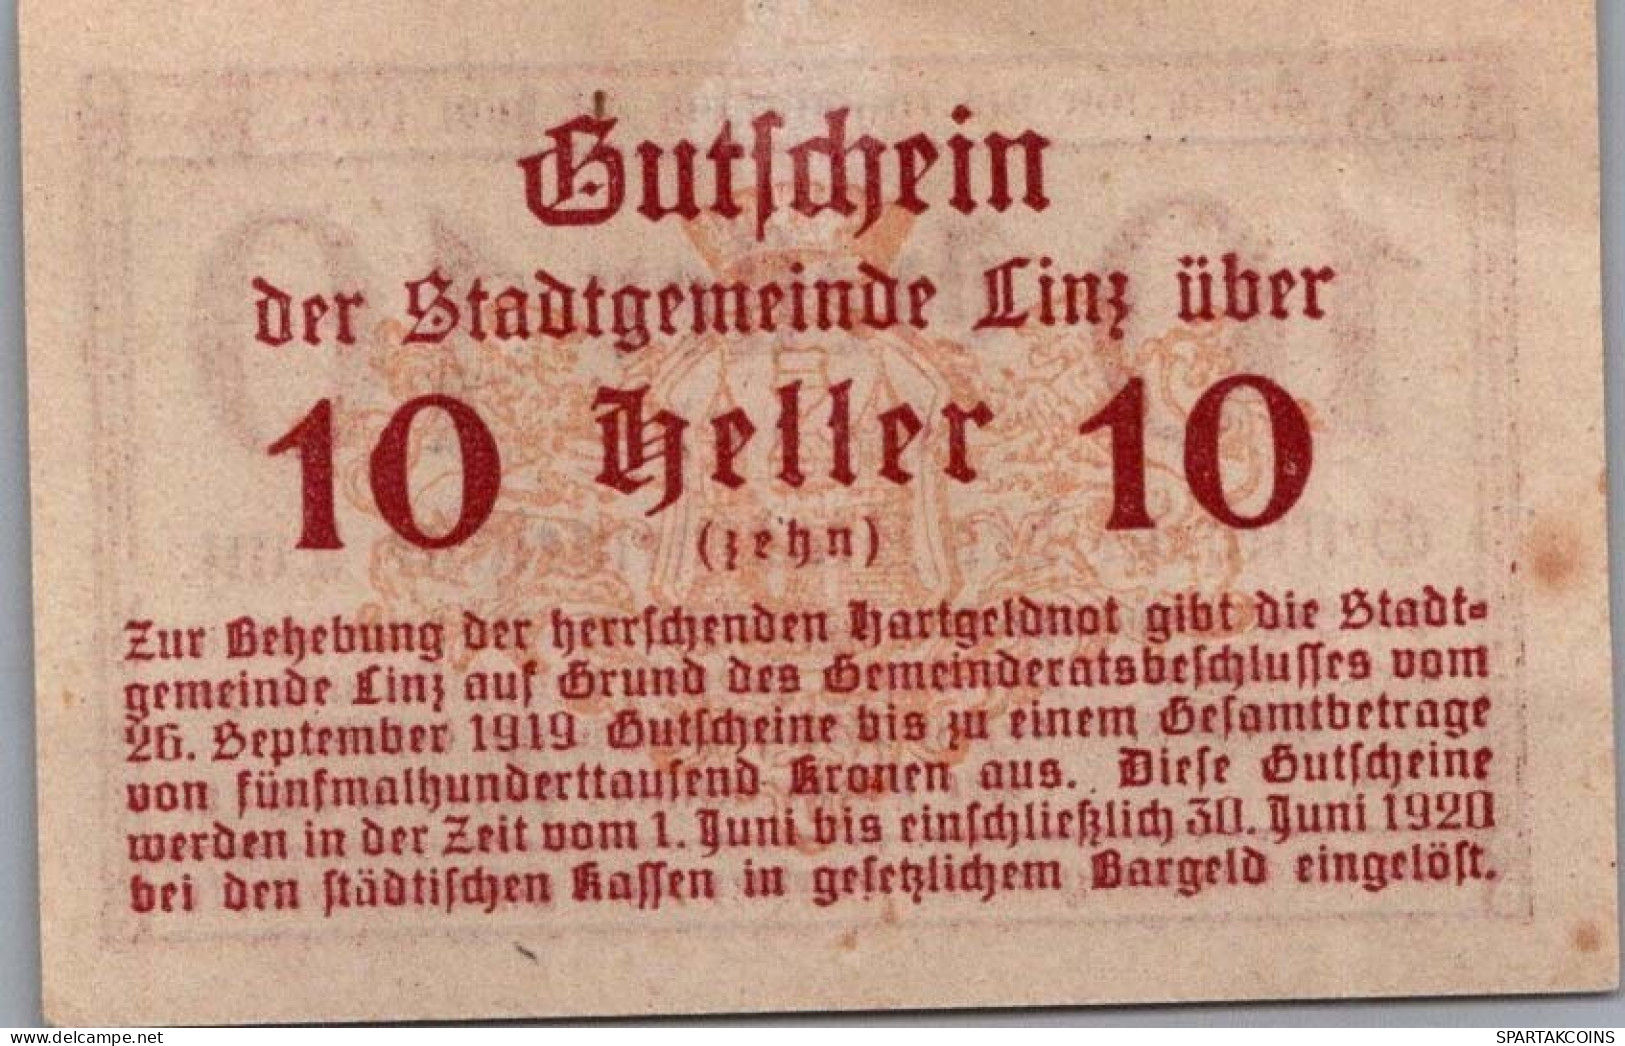 10 HELLER 1920 Stadt LINZ Oberösterreich Österreich Notgeld Banknote #PI430 - [11] Local Banknote Issues